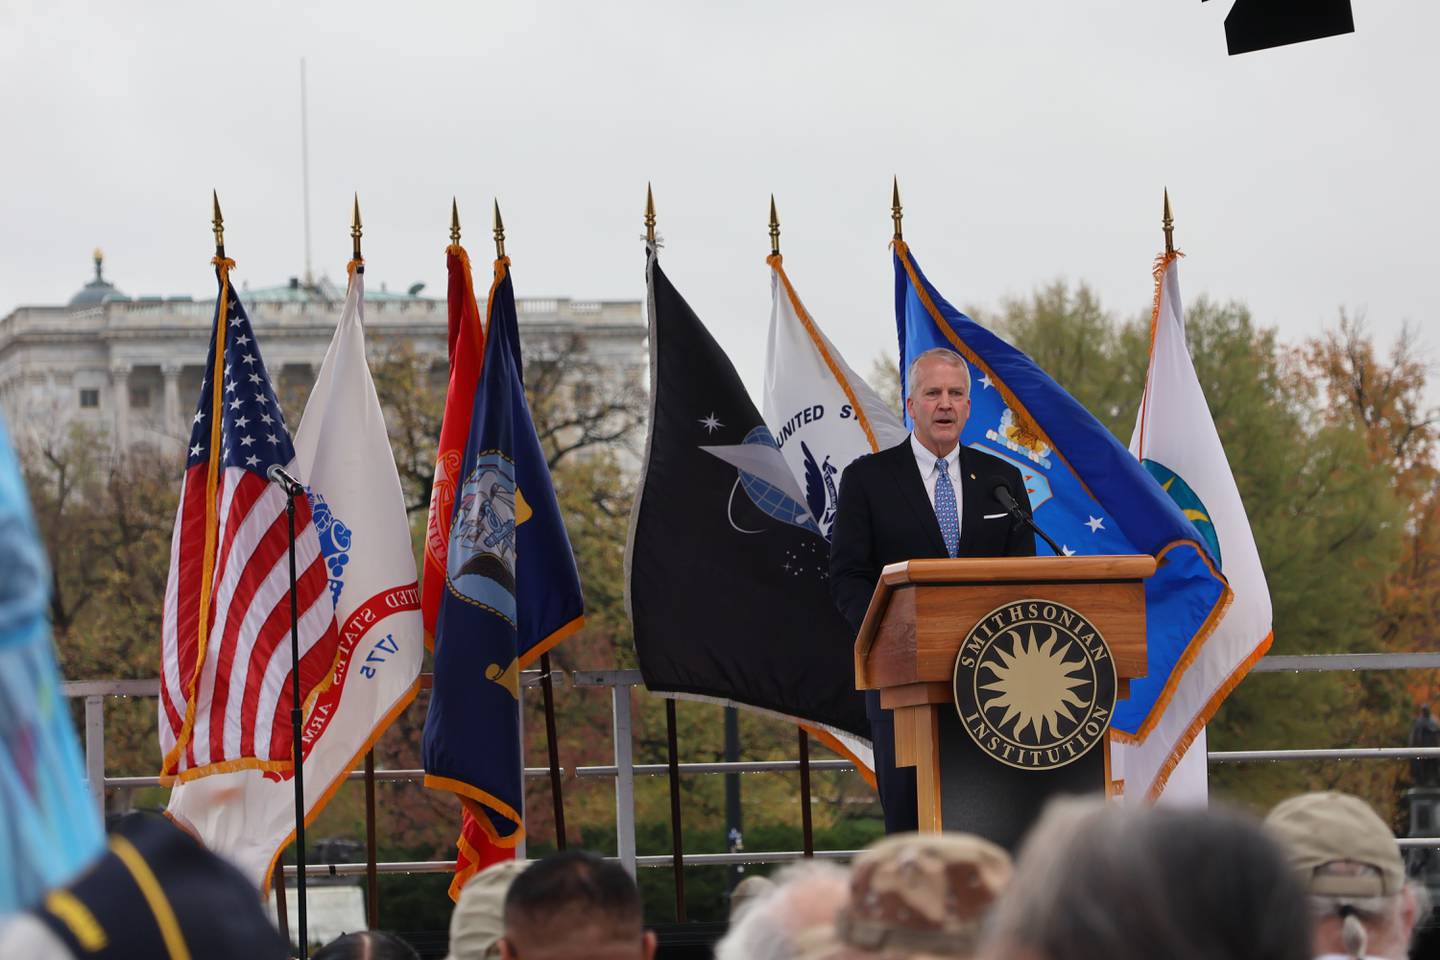 National Memorial to Native American Veterans